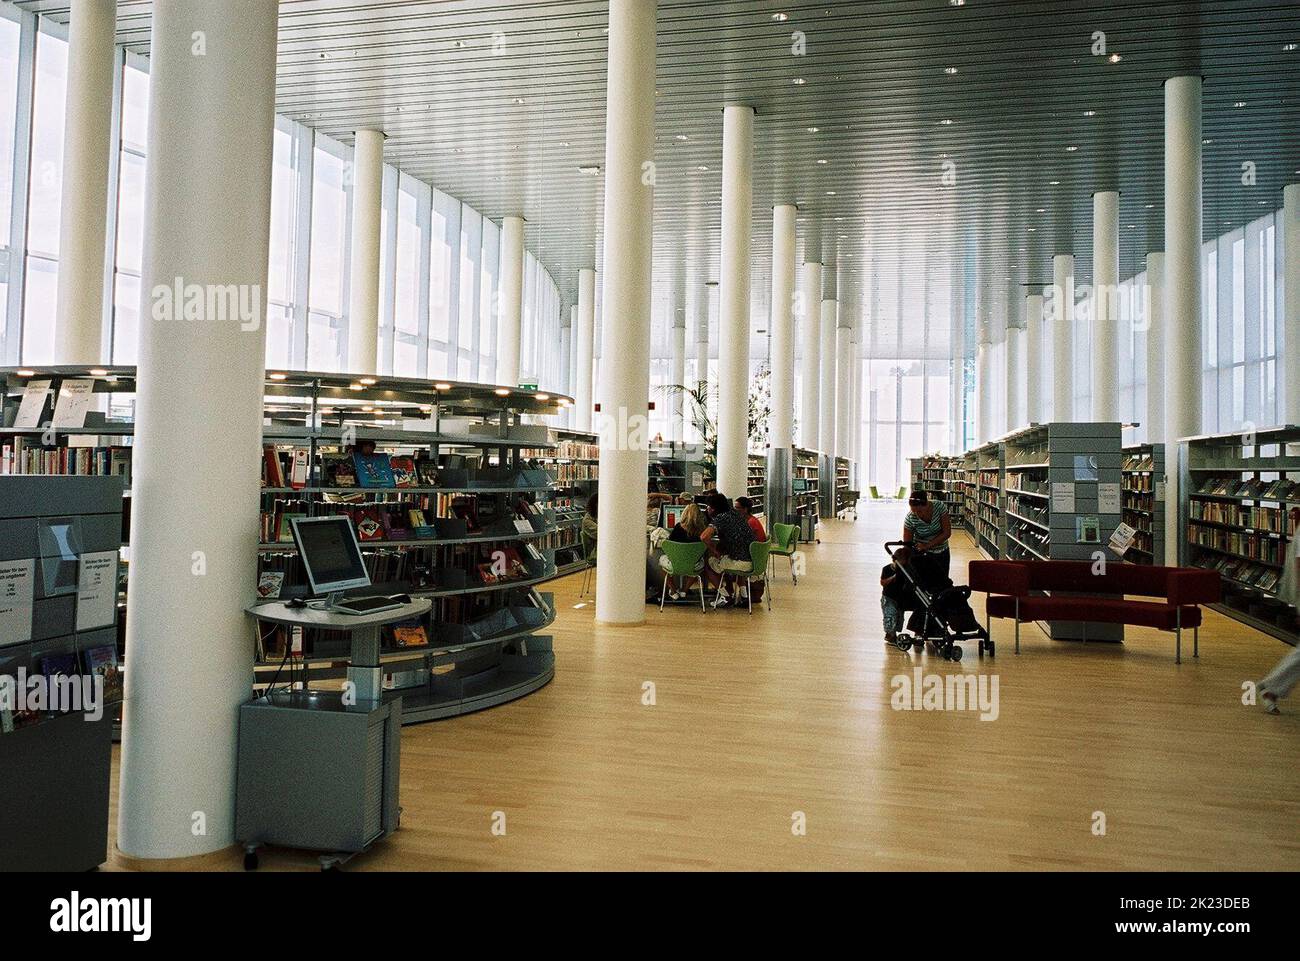 LA bibliothèque HALLAND DE HALLAND a été inaugurée en avril 2006 à l'intérieur du hall principal Banque D'Images